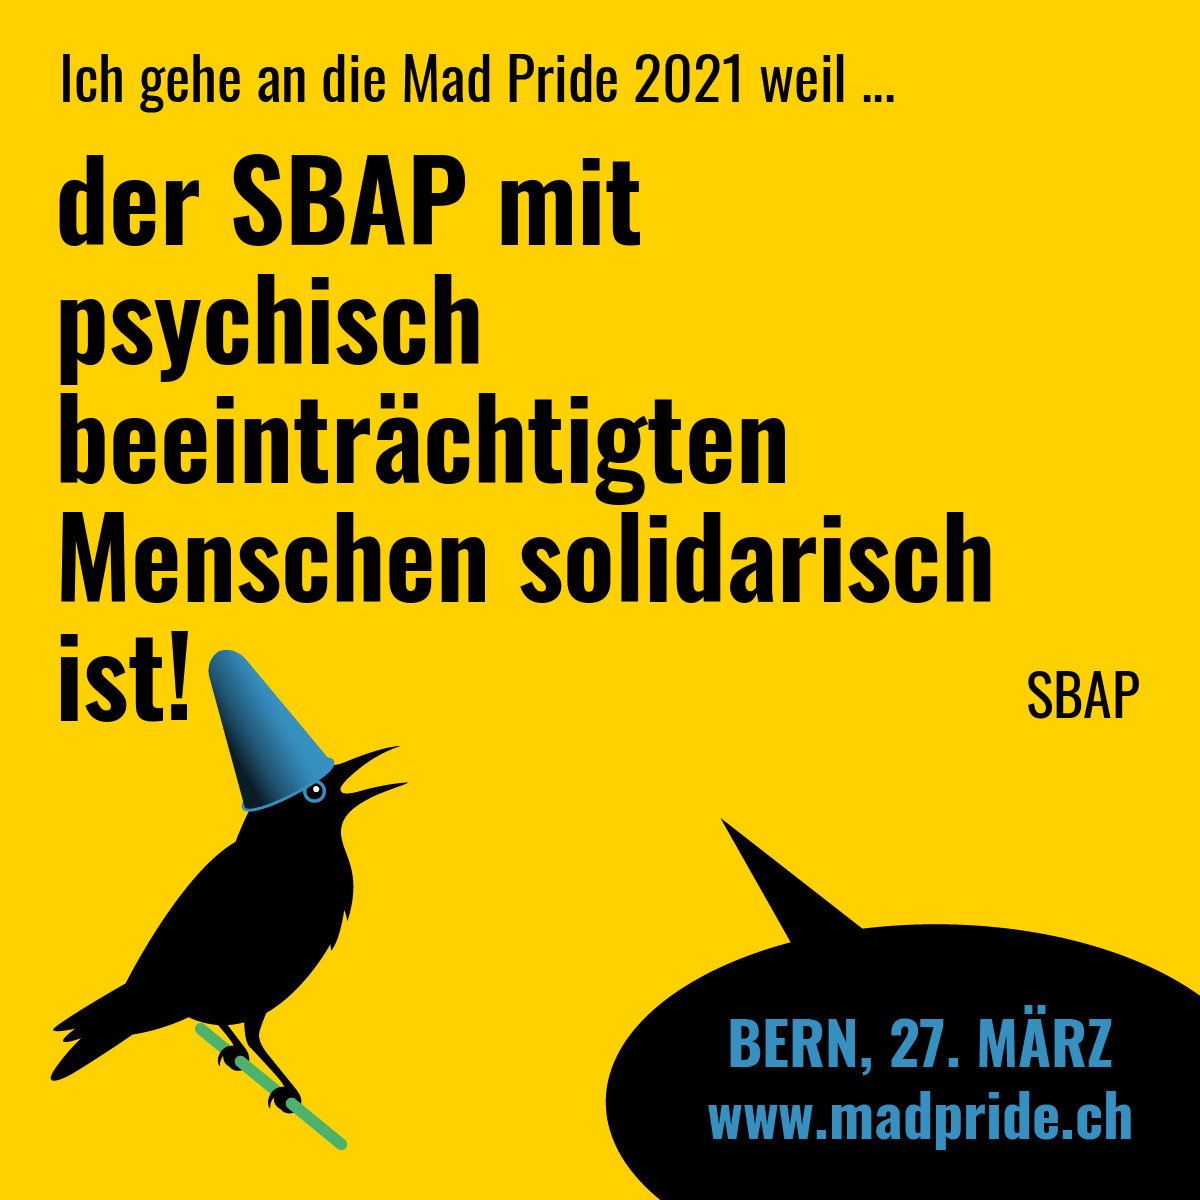 der SBAP mit psychisch beeinträchtigten Menschen solidarisch ist! SBAP